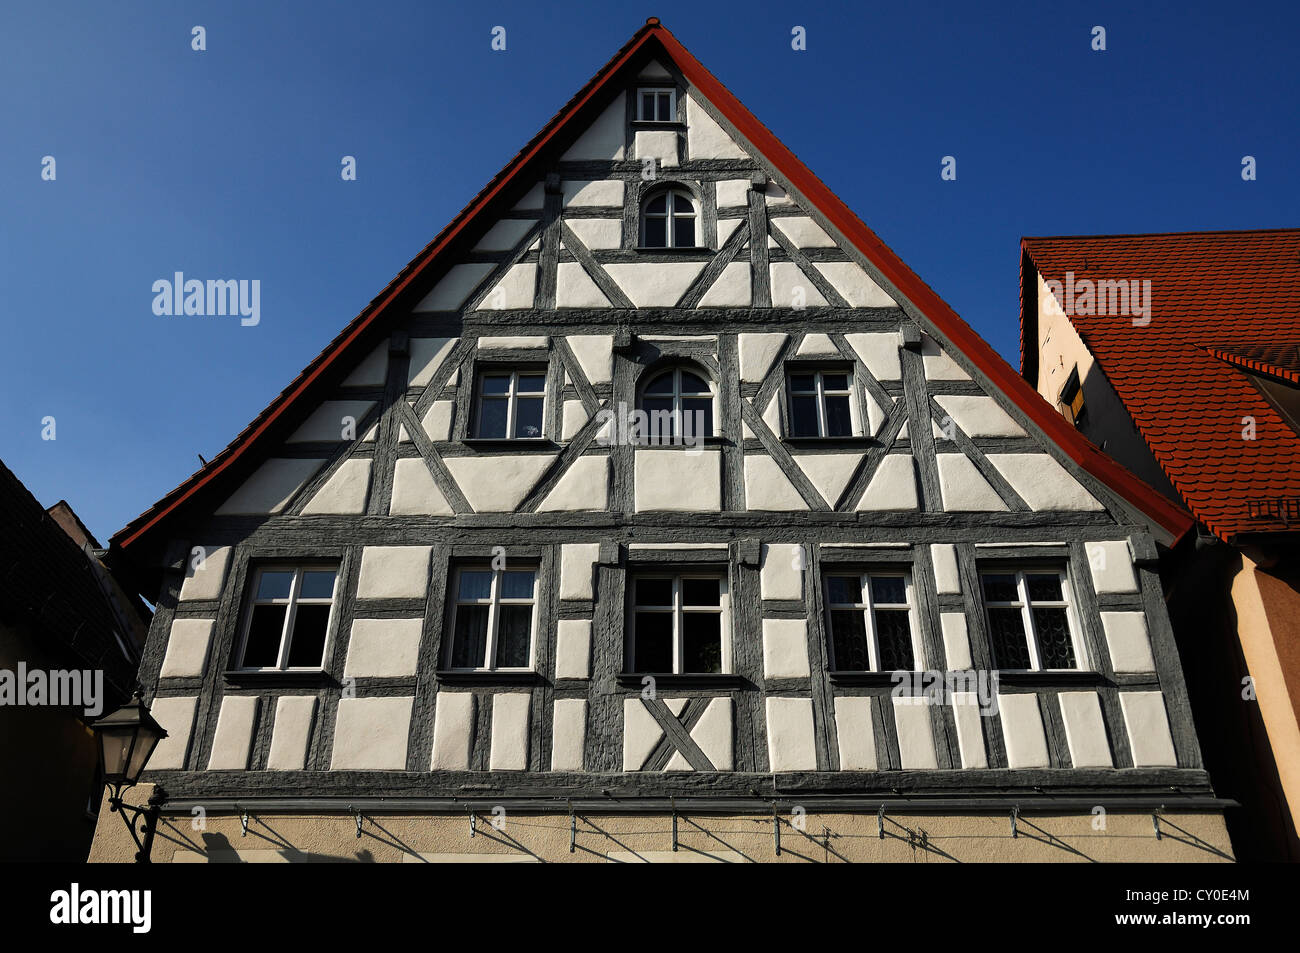 Maison à colombages restaurée, construite autour de 1800, Kiliansgasse street, Altdorf, Middle Franconia, Bavaria Banque D'Images